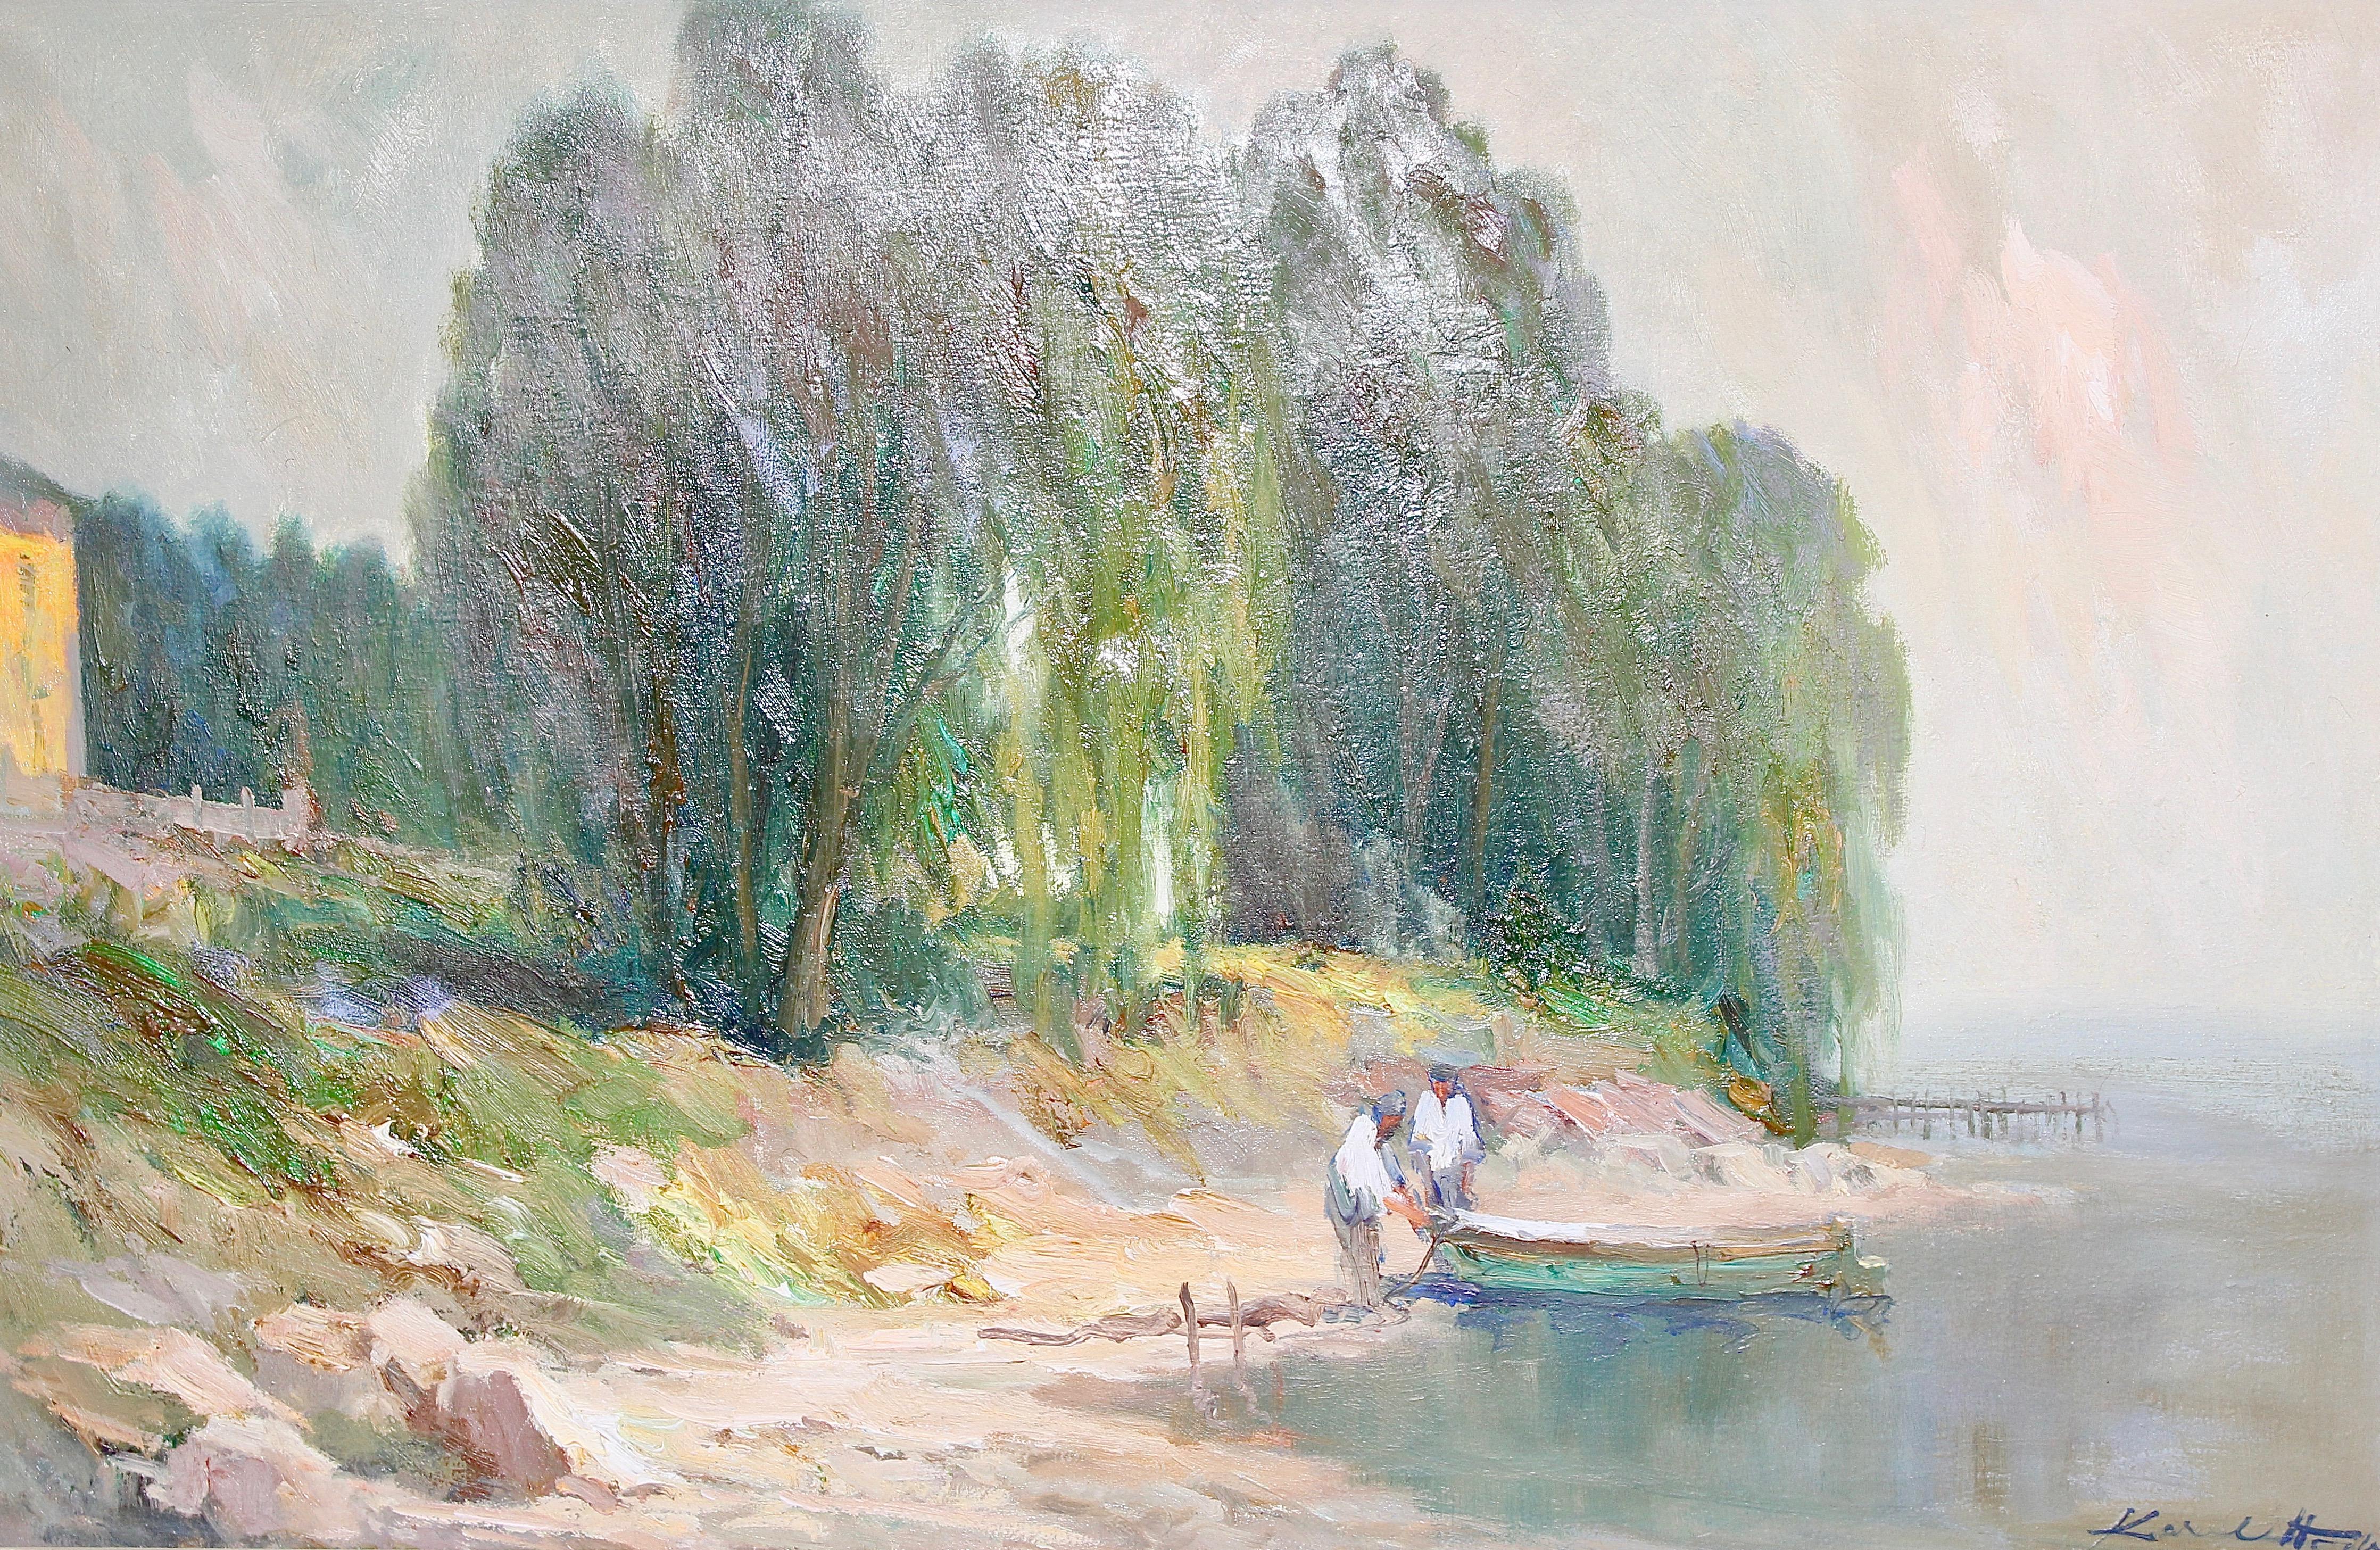 Landscape Painting Karel Hodr - Peinture, huile sur toile, paysage marin. Fisherman at Lake Garda, Italie.